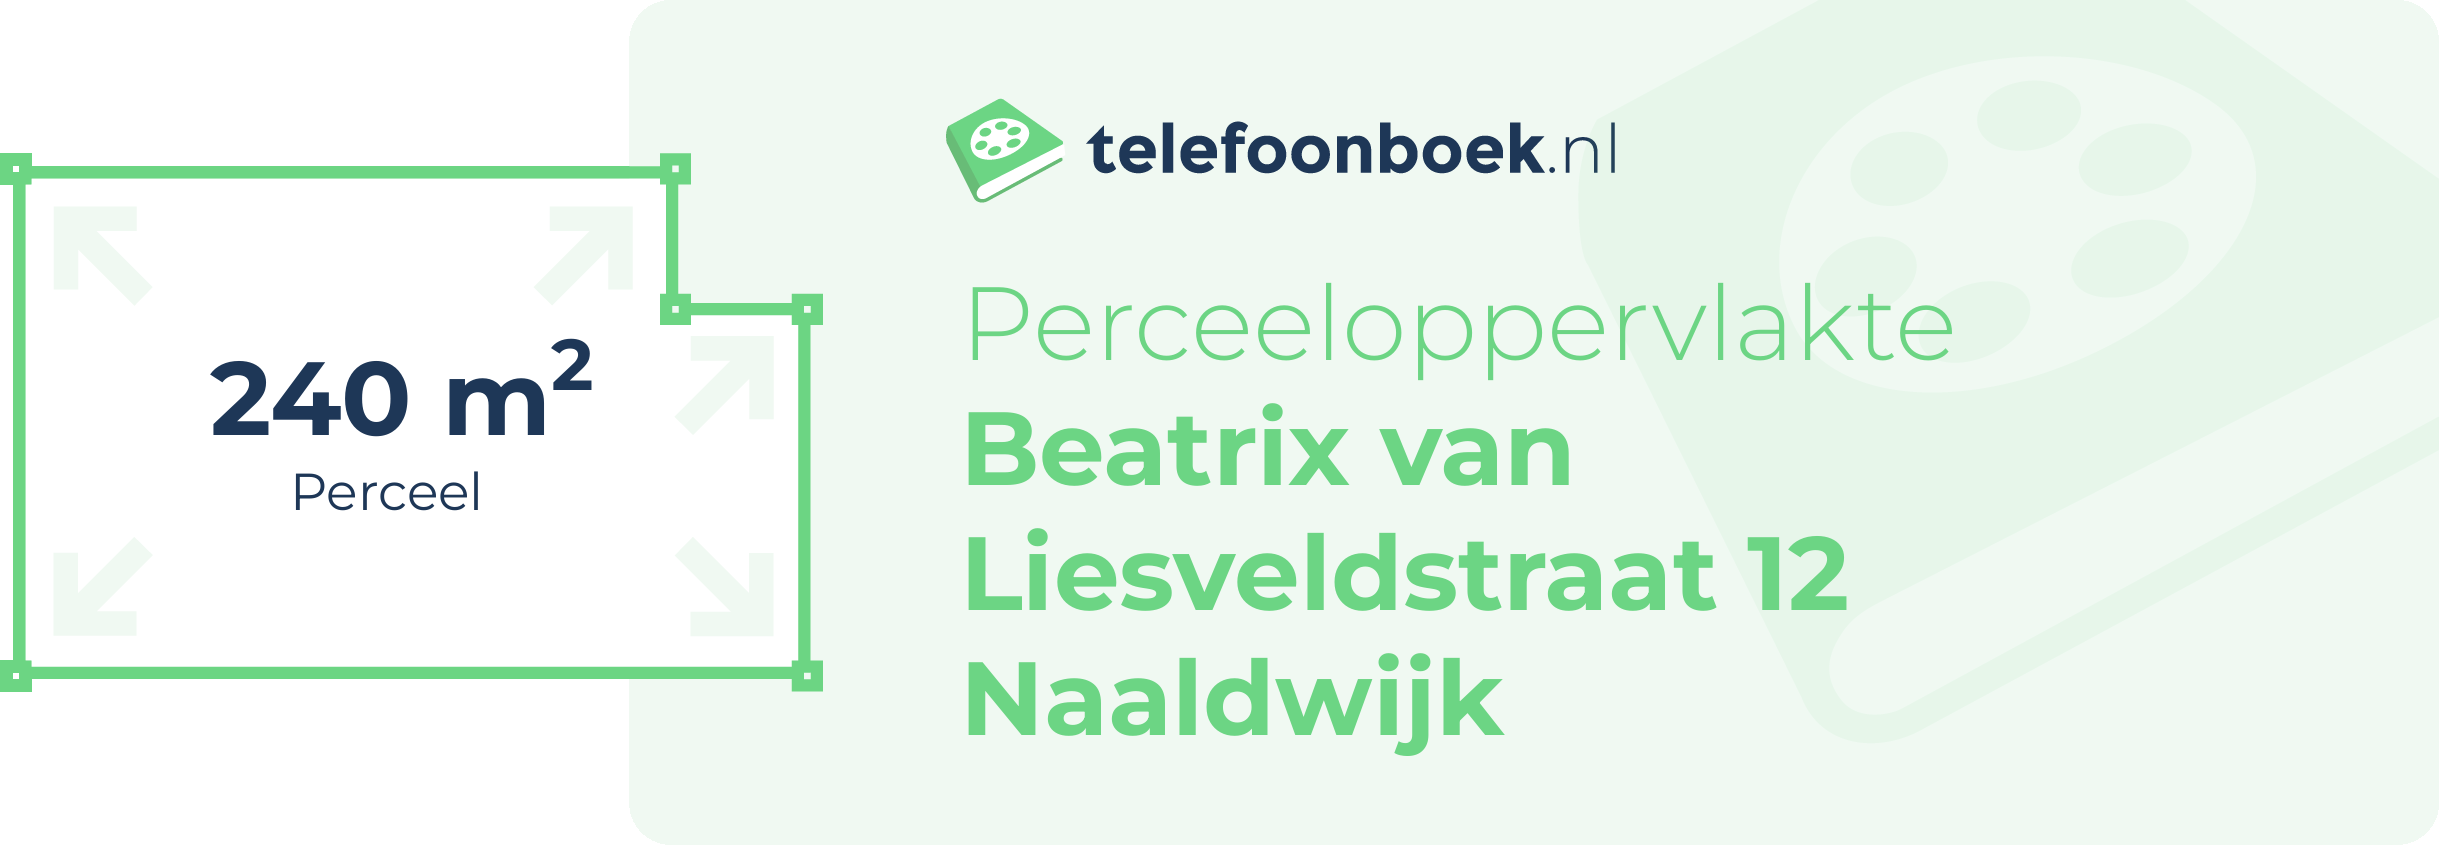 Perceeloppervlakte Beatrix Van Liesveldstraat 12 Naaldwijk